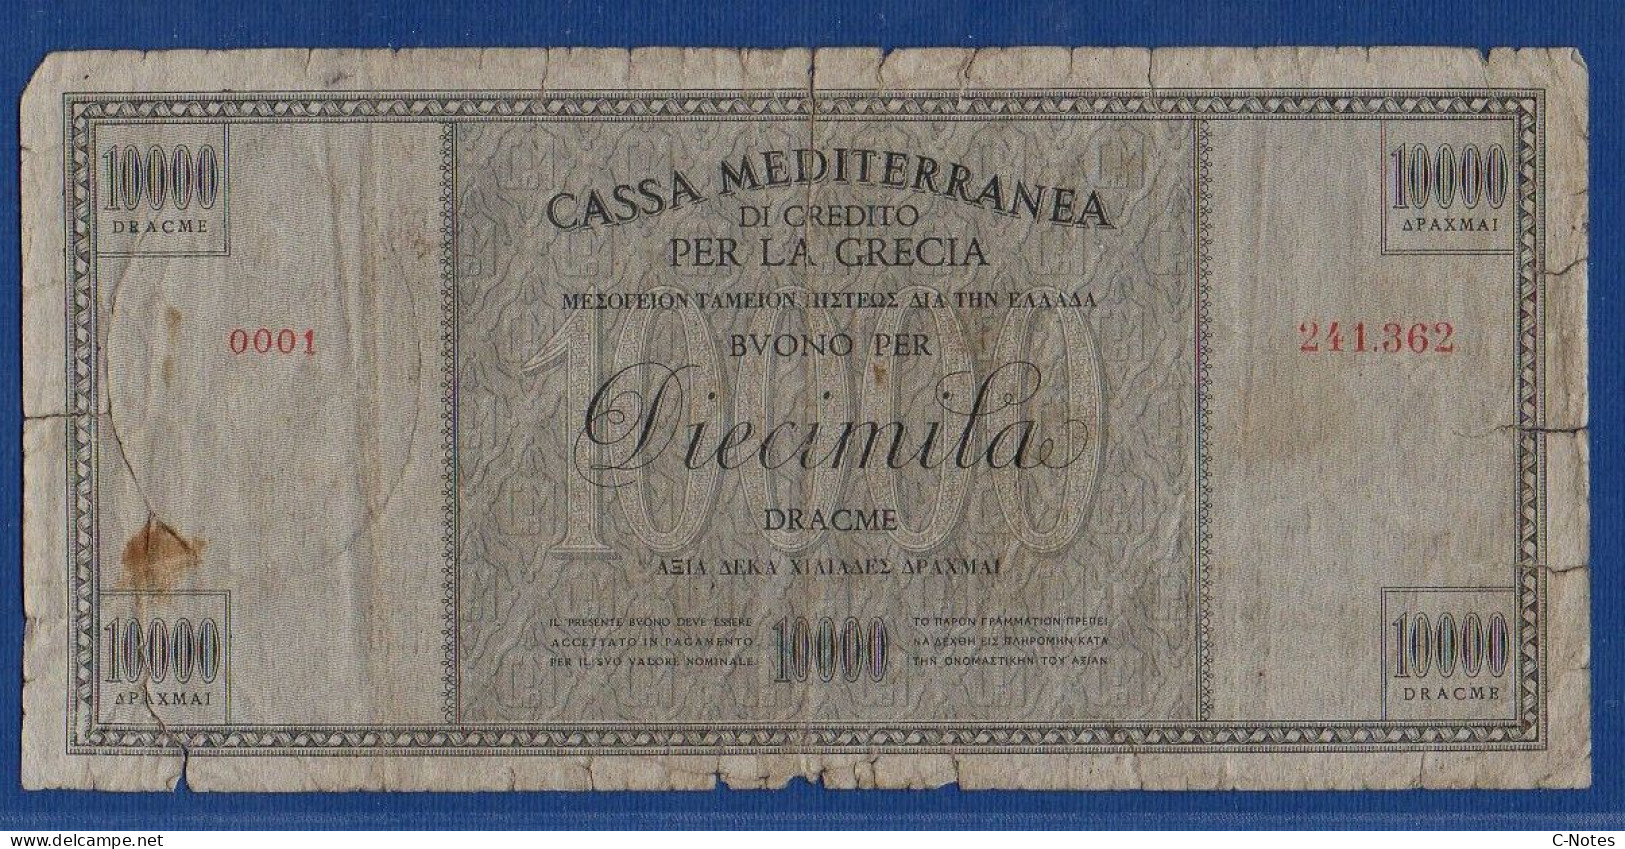 GREECE - Cassa Mediterranea Di Credito - P.M8 – 10000 DRACME ND 1941 - CIRCULATED - SERIE 0001 241.362 - Occupation Italienne Egéenne